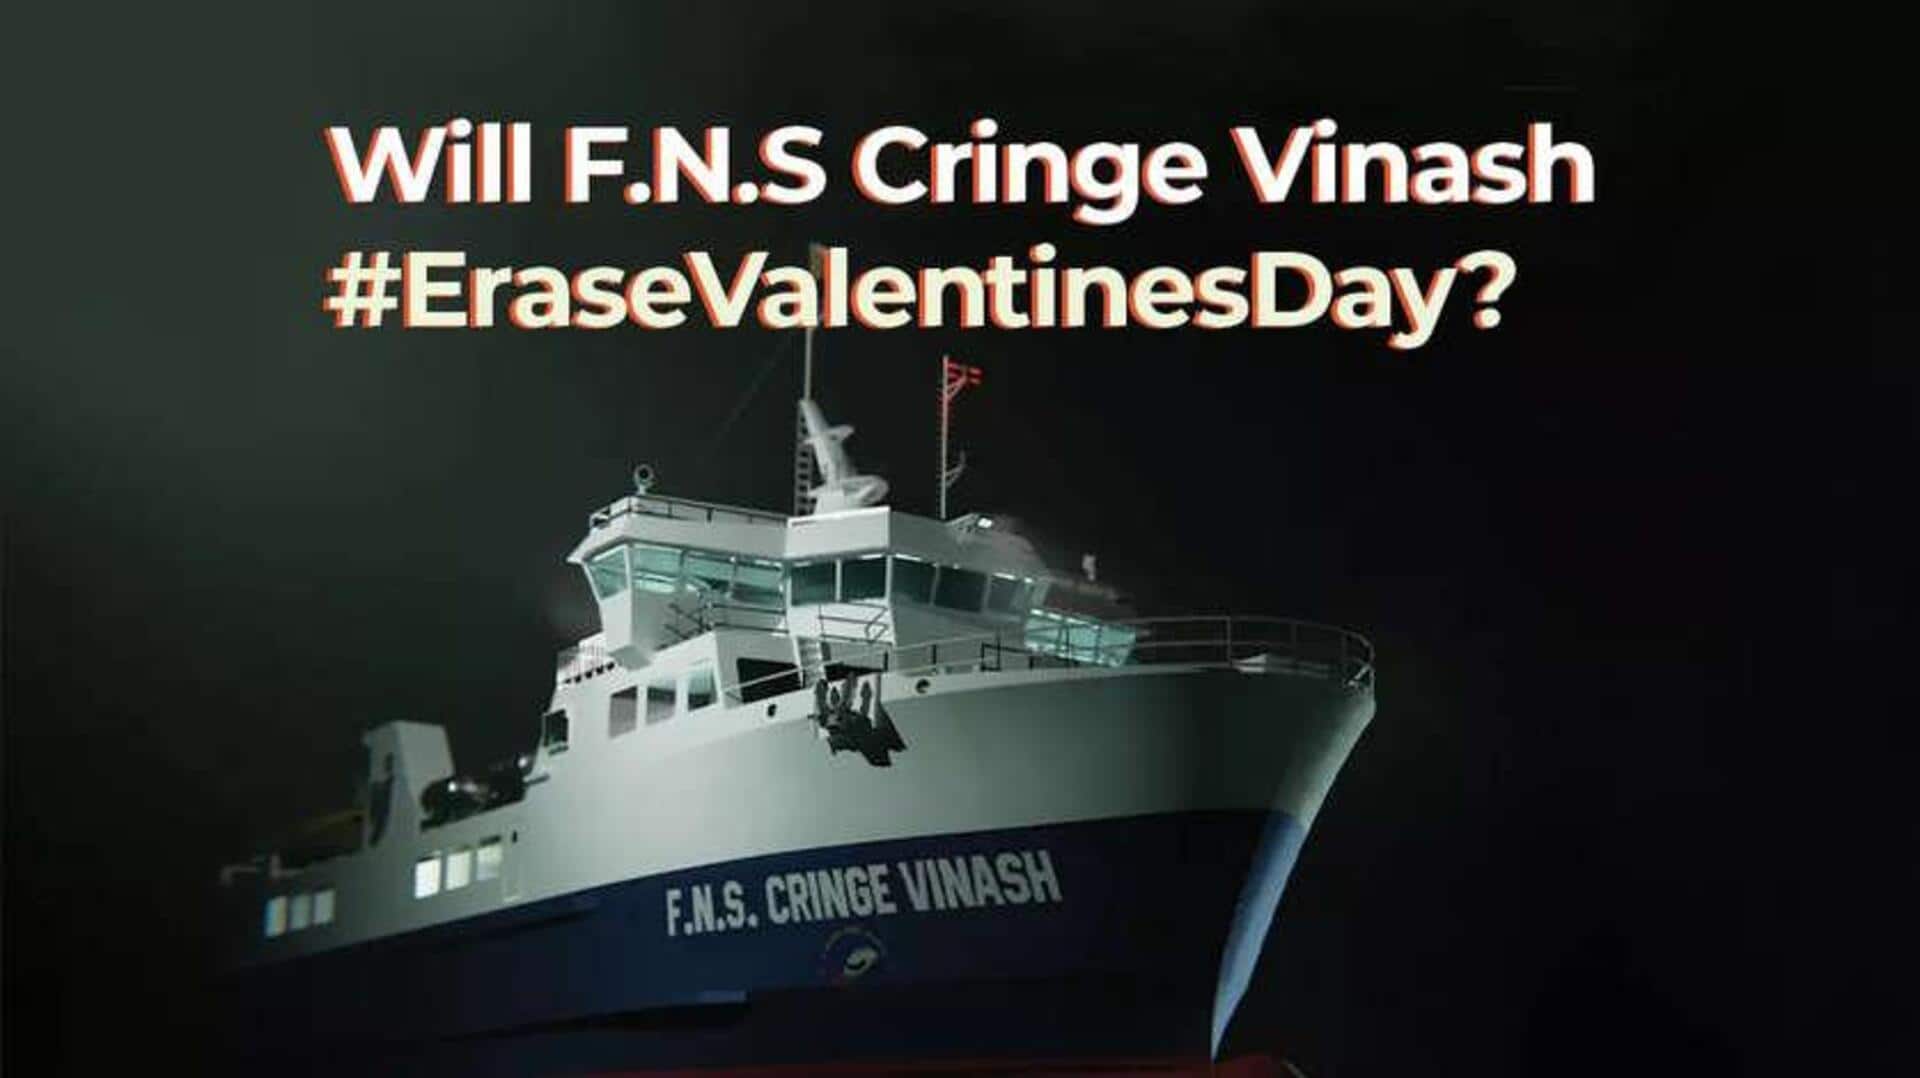 F.N.S. Cringe Vinash finds nationwide backing for 'Erase Valentine's Day'